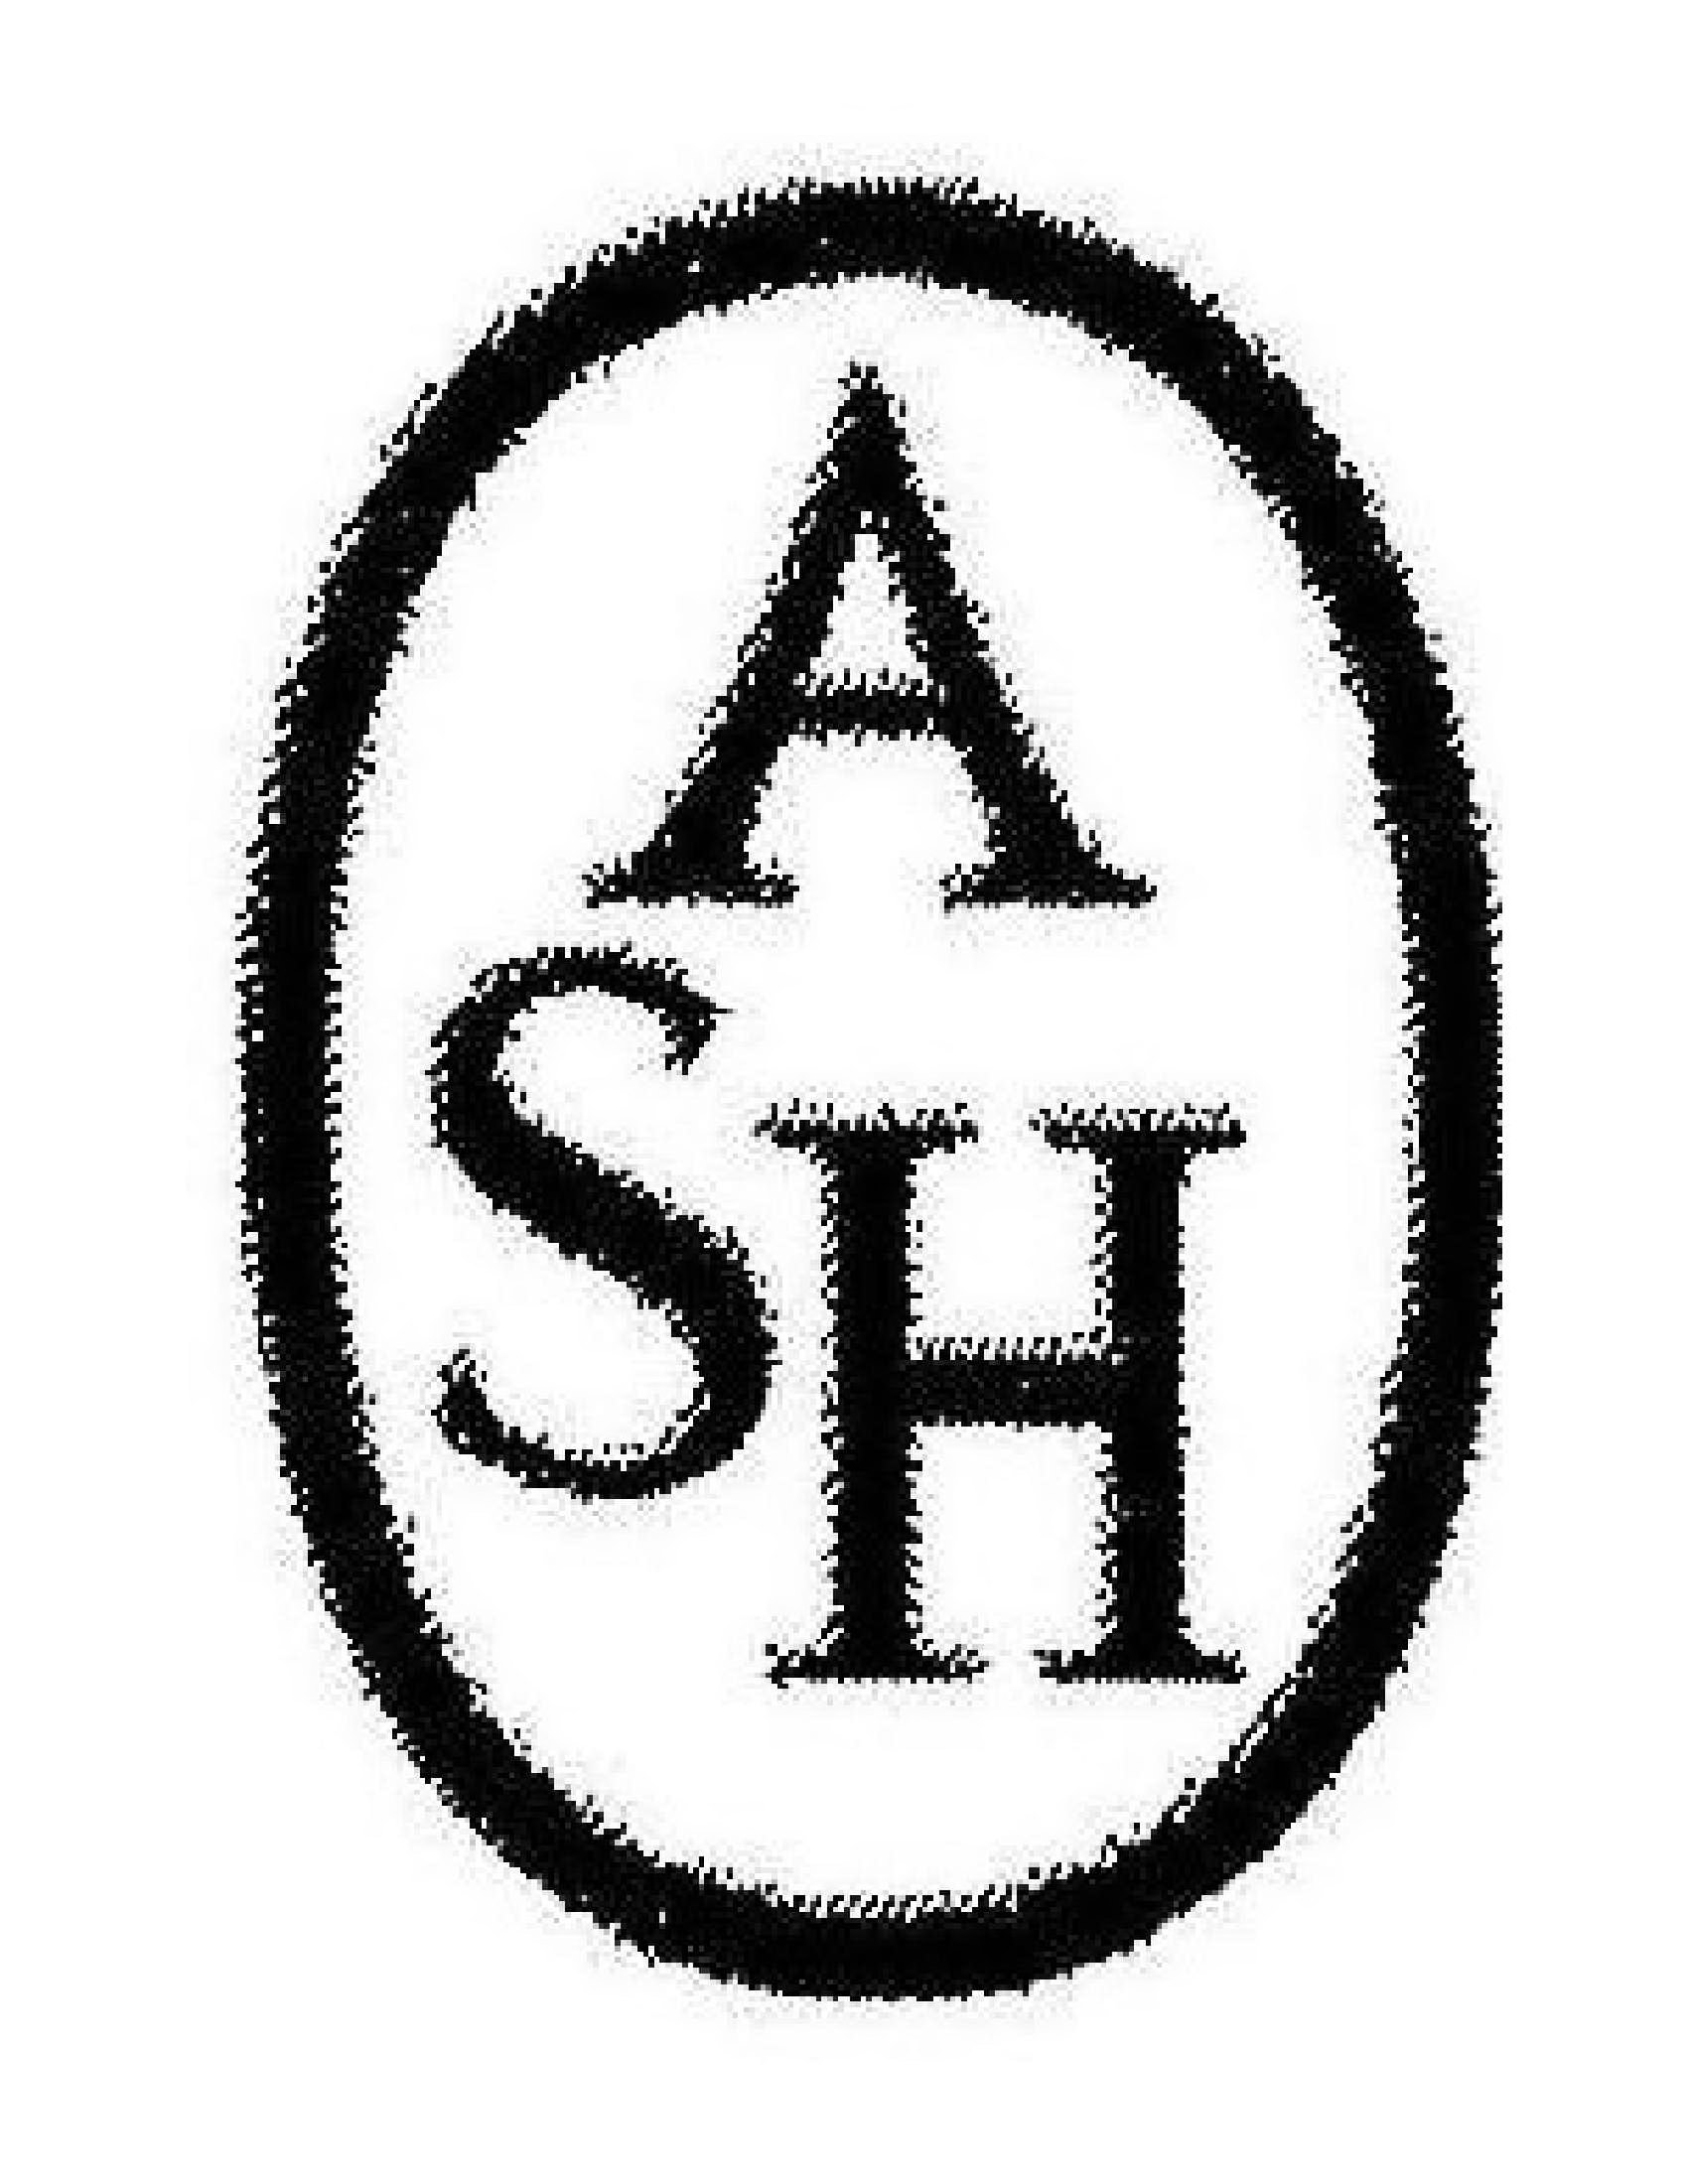 Trademark Logo ASH